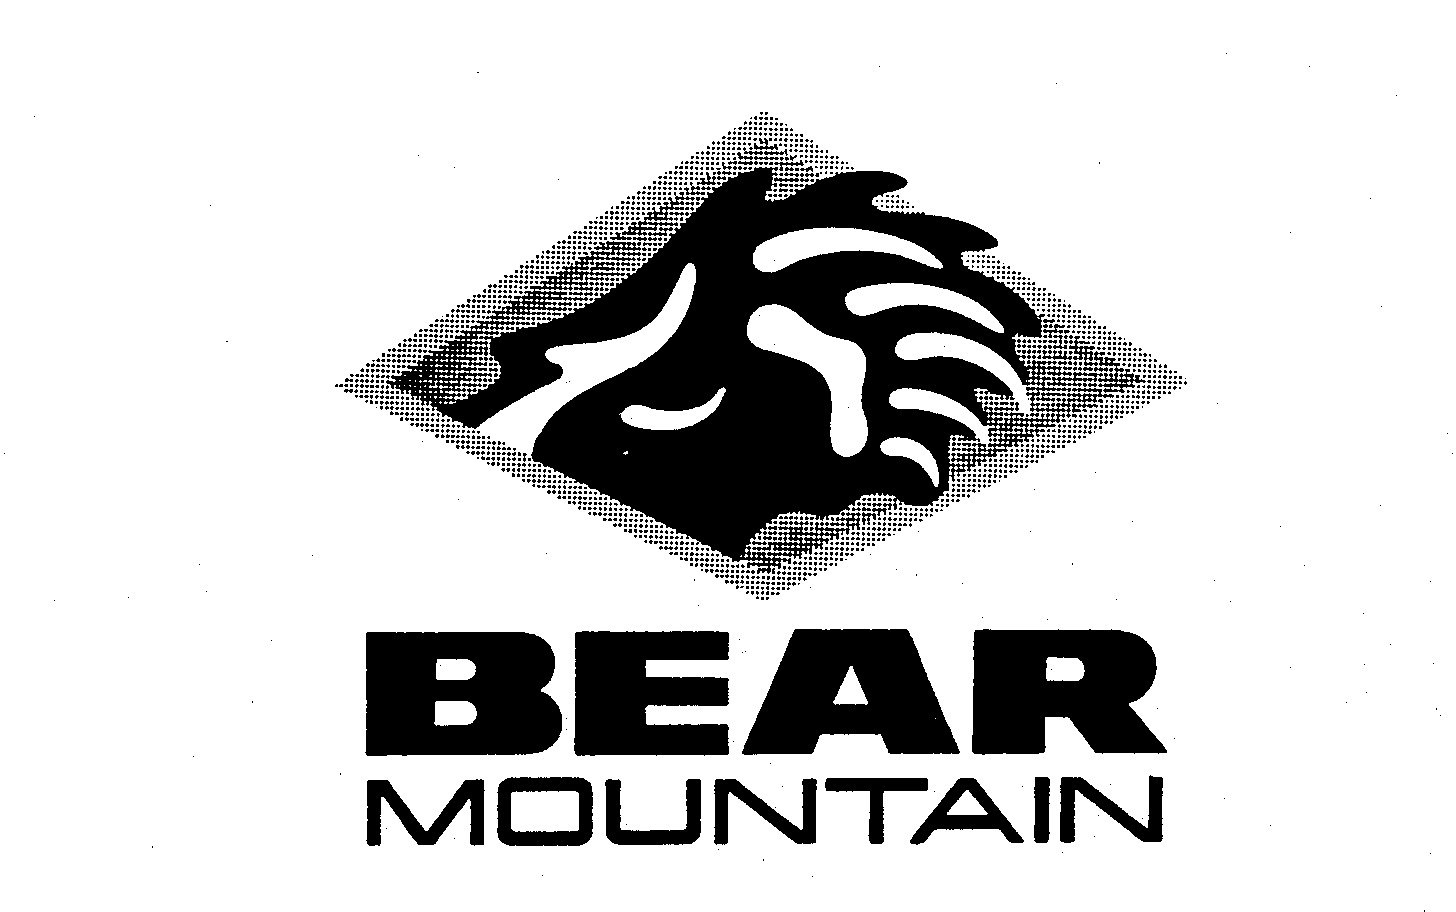 Trademark Logo BEAR MOUNTAIN